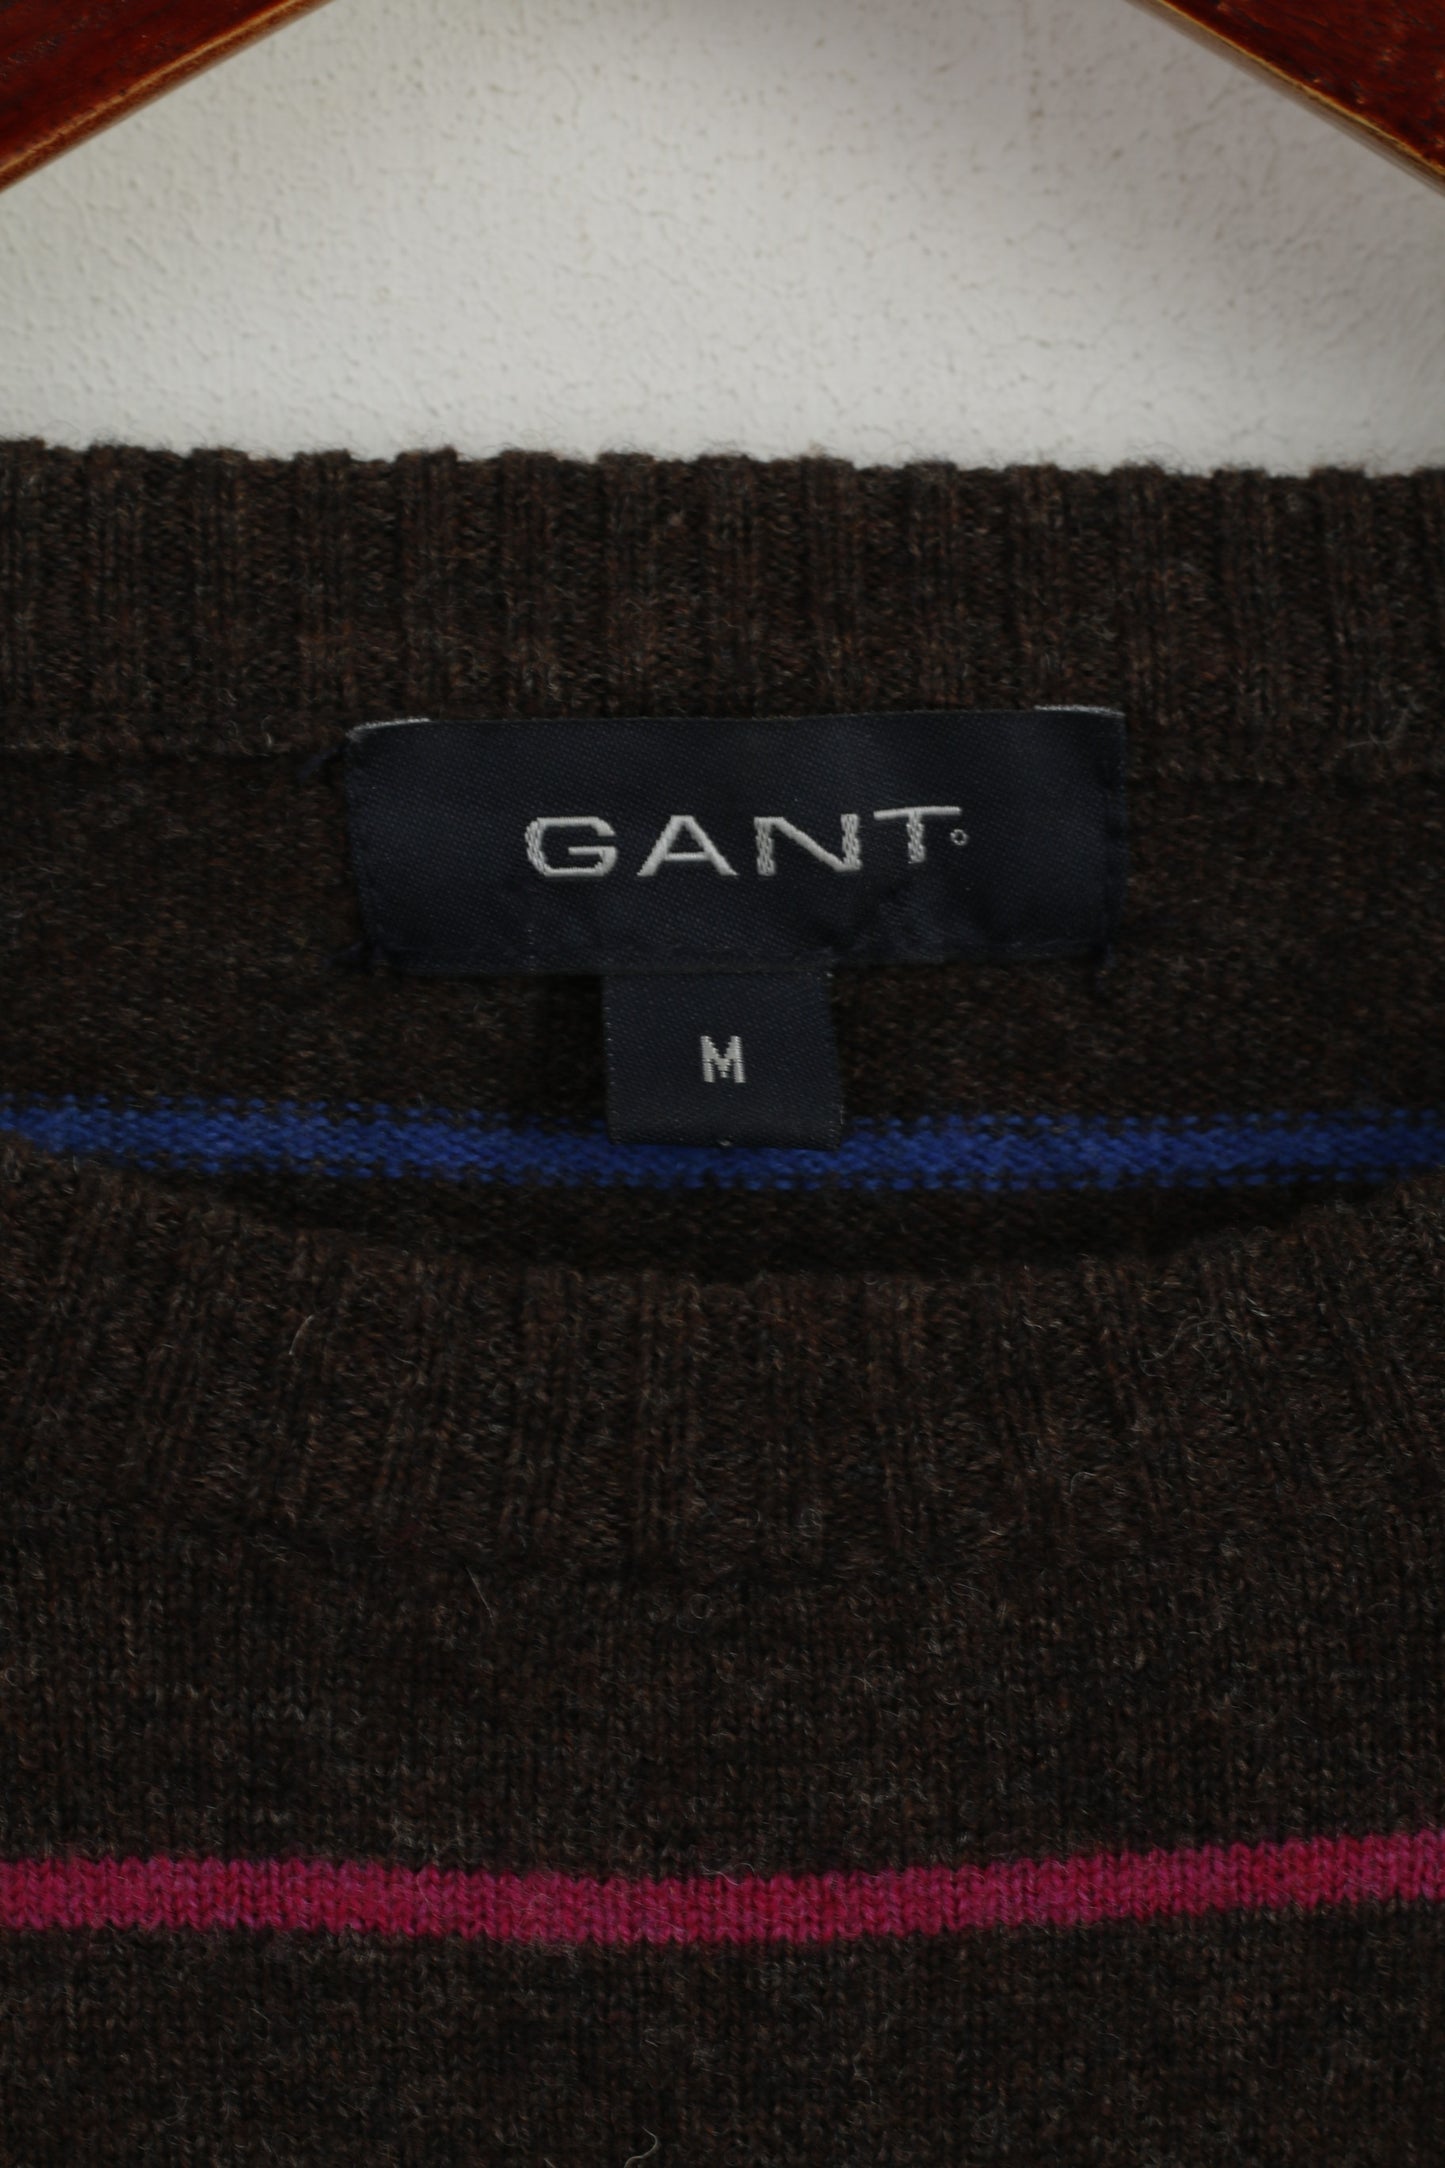 GANT Women M Jumper Brown Striped Wool Crew Neck Soft Sweater